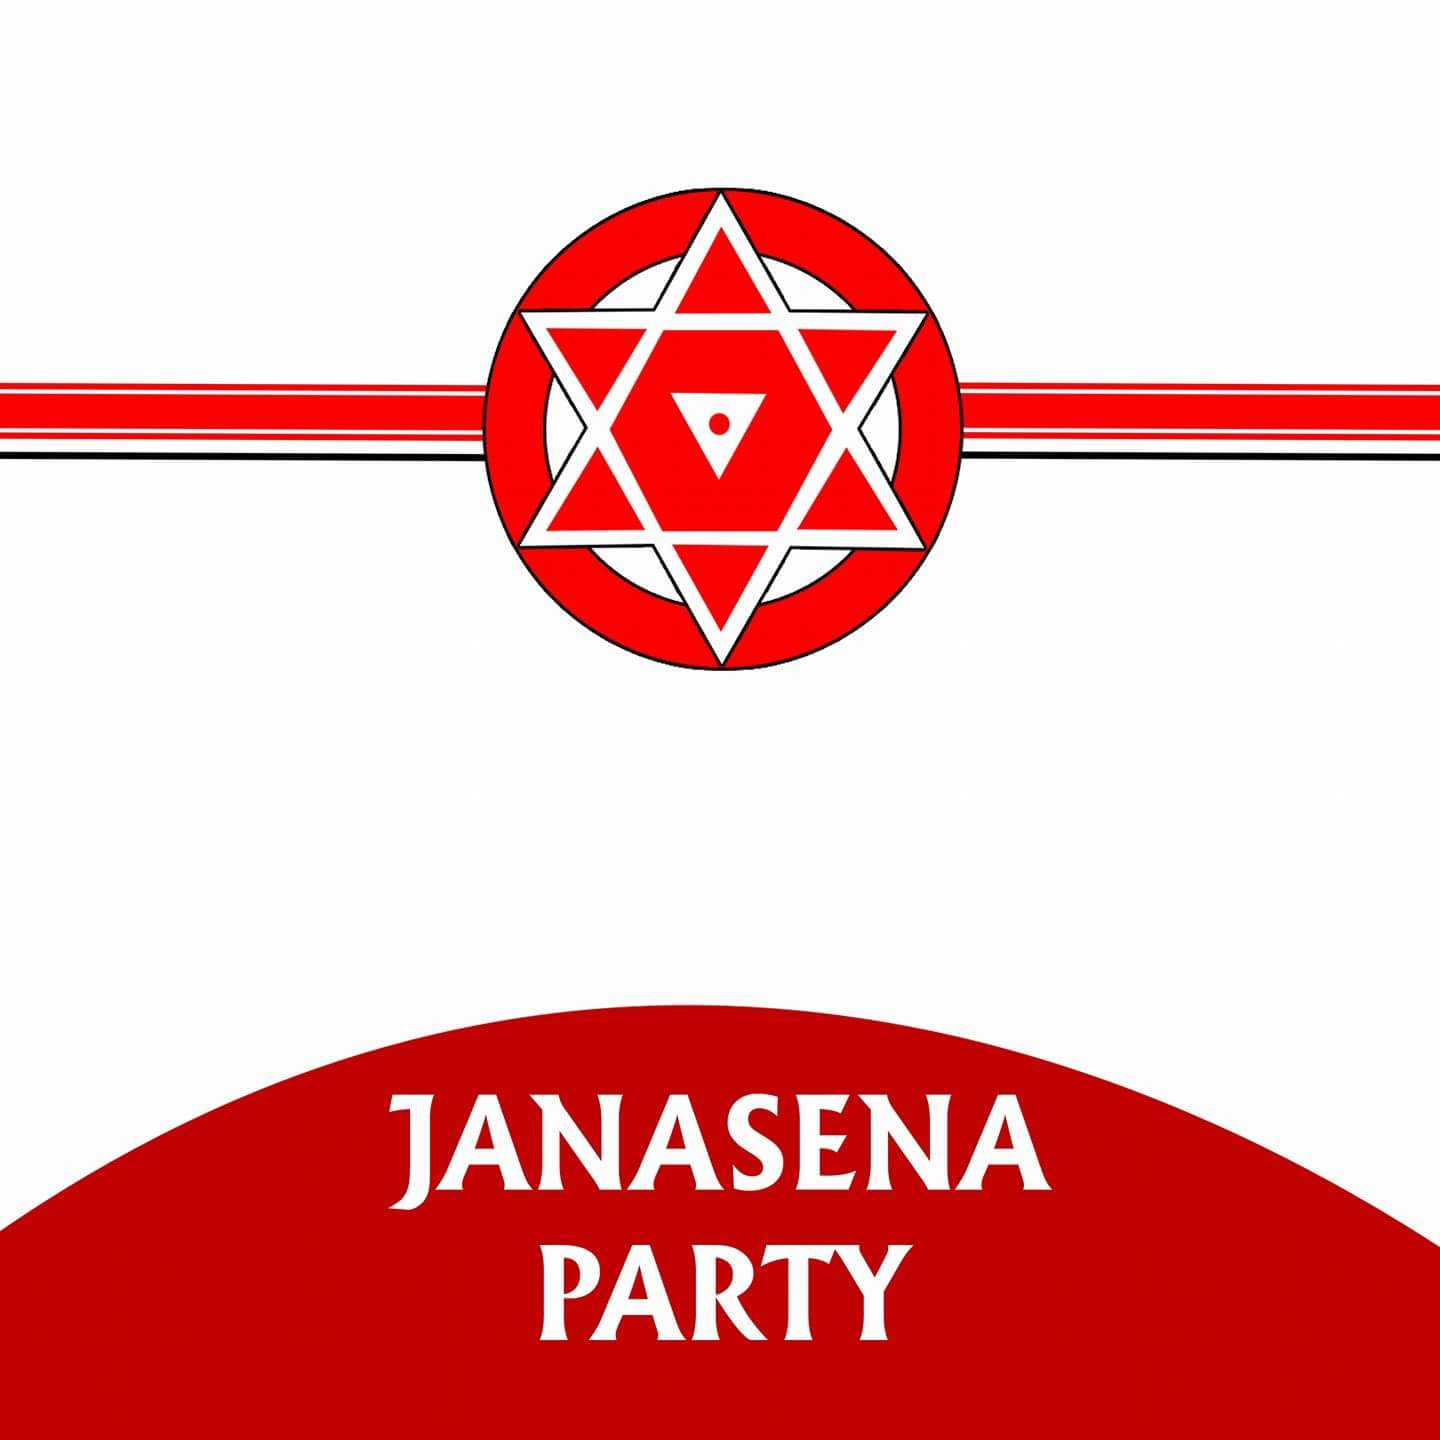 Jana Sena flag design explained  nowrunning